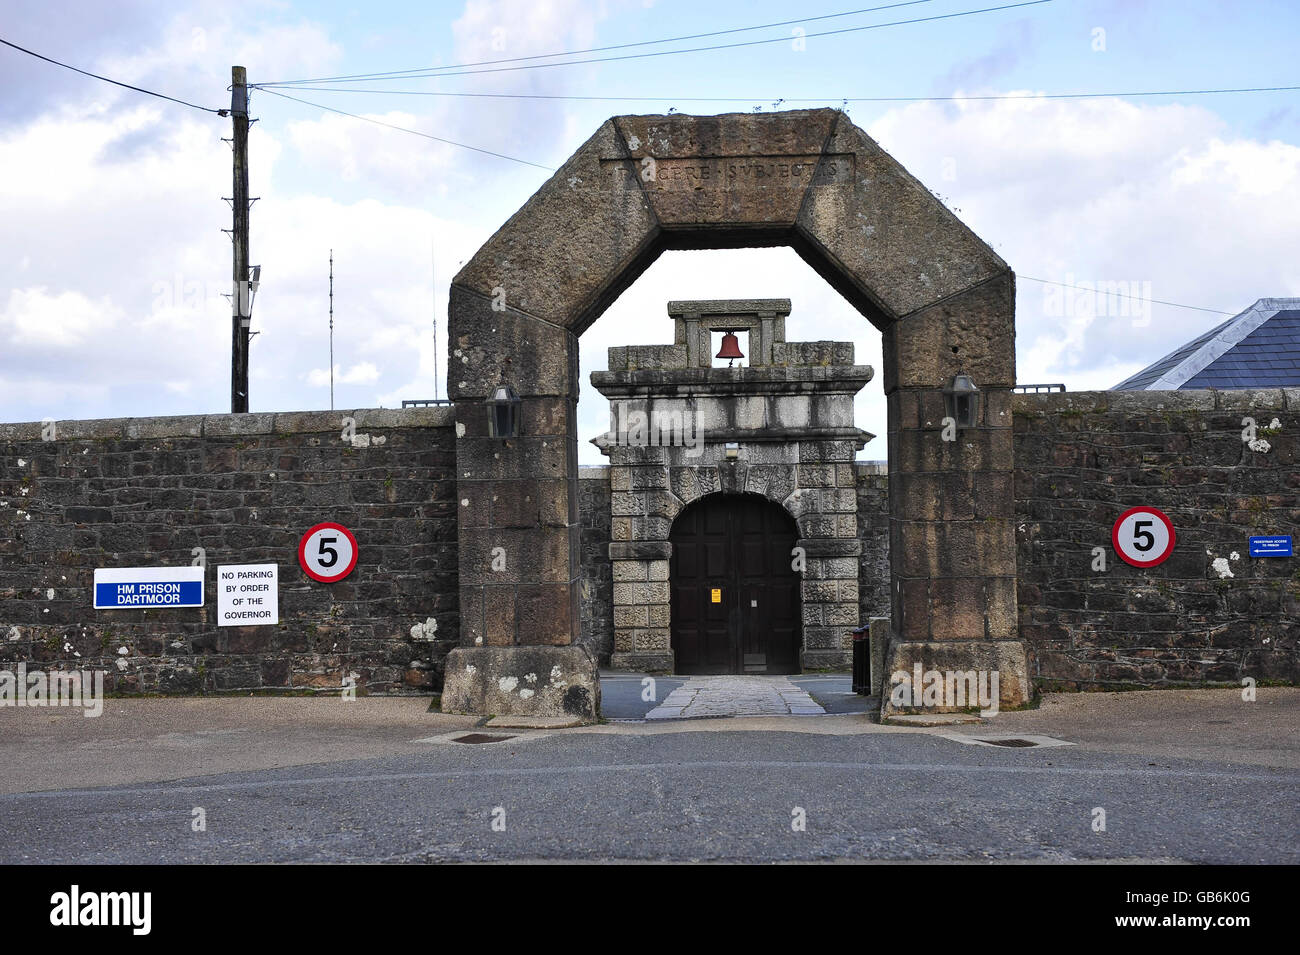 HM Gefängnis Dartmoor - Devon. Allgemeine Ansicht des HM Gefängnisses Dartmoor, Devon. Stockfoto